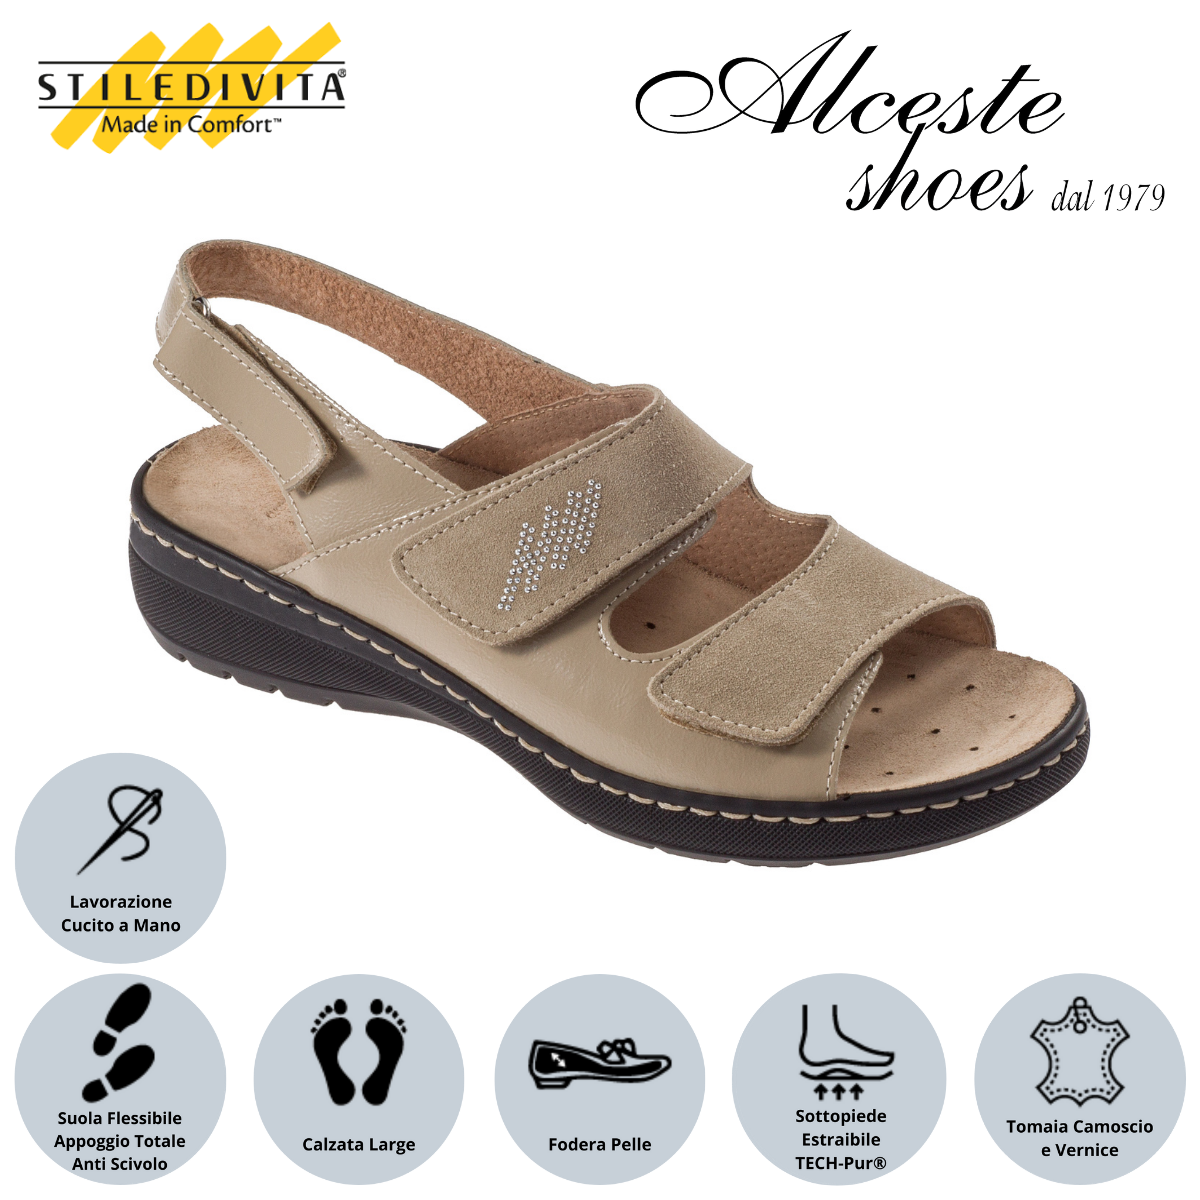 Sandalo con Strappi e Sottopiede Estraibile "Stiledivita" Art. 8228 Naplac e Camoscio Beige Alceste Shoes 13